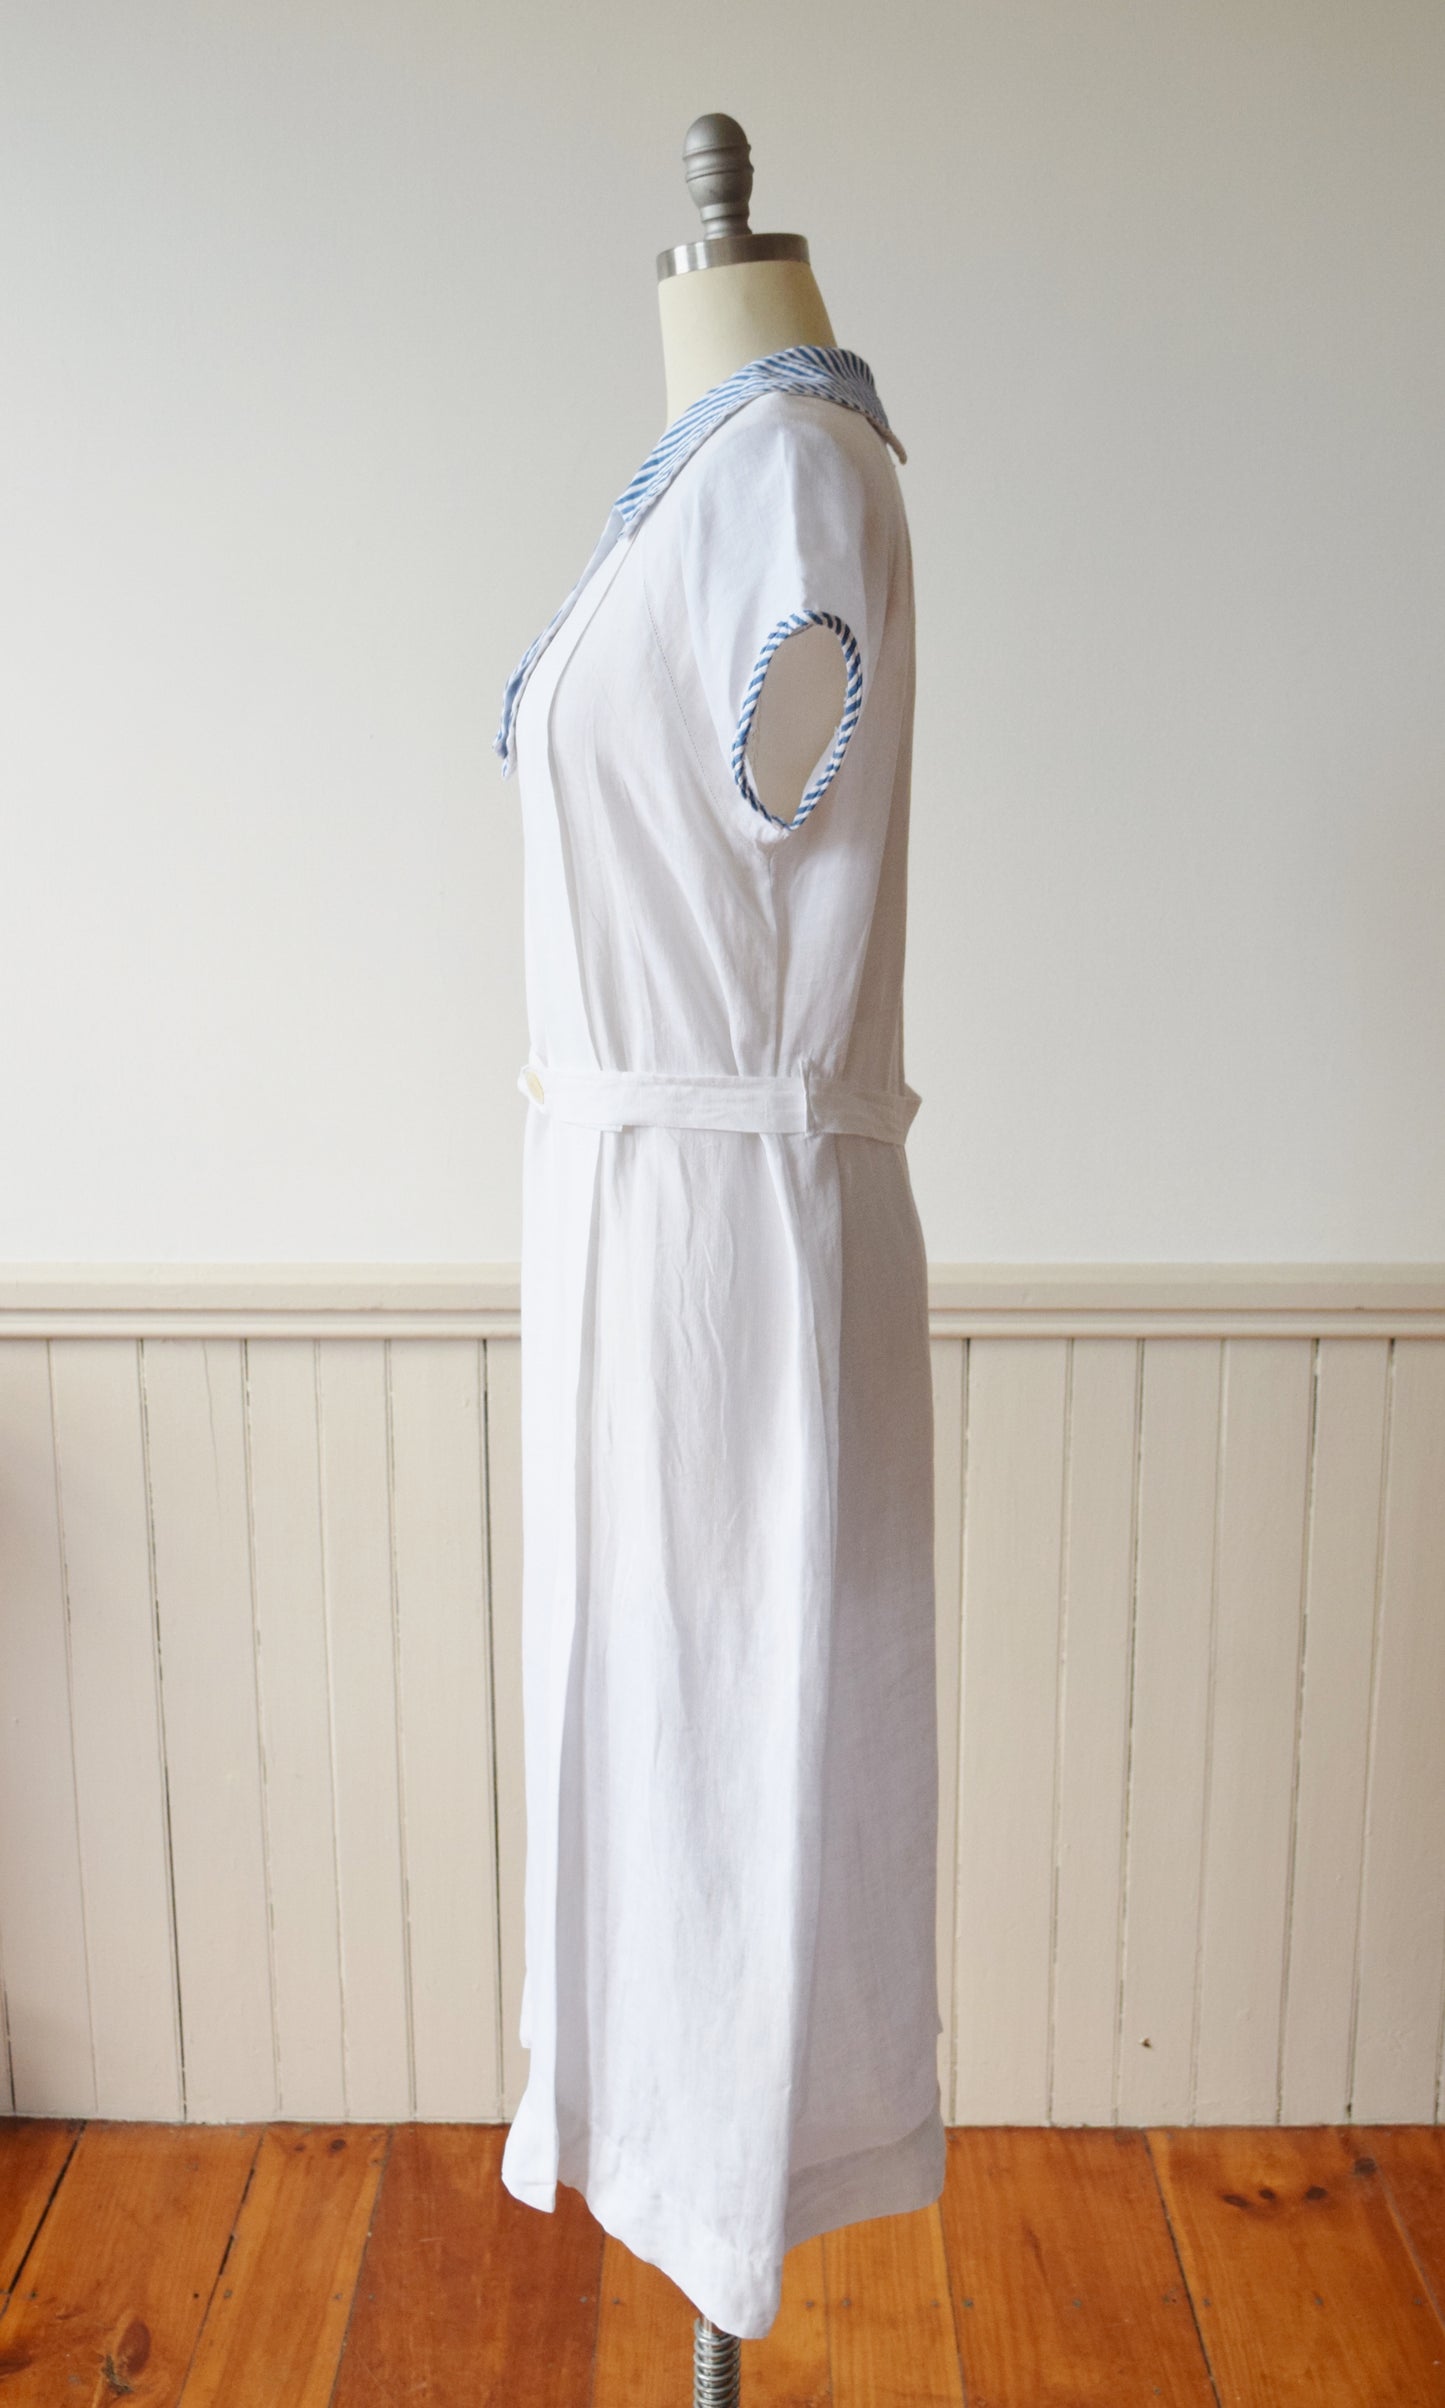 Early 1930s Linen Sport Dress | M